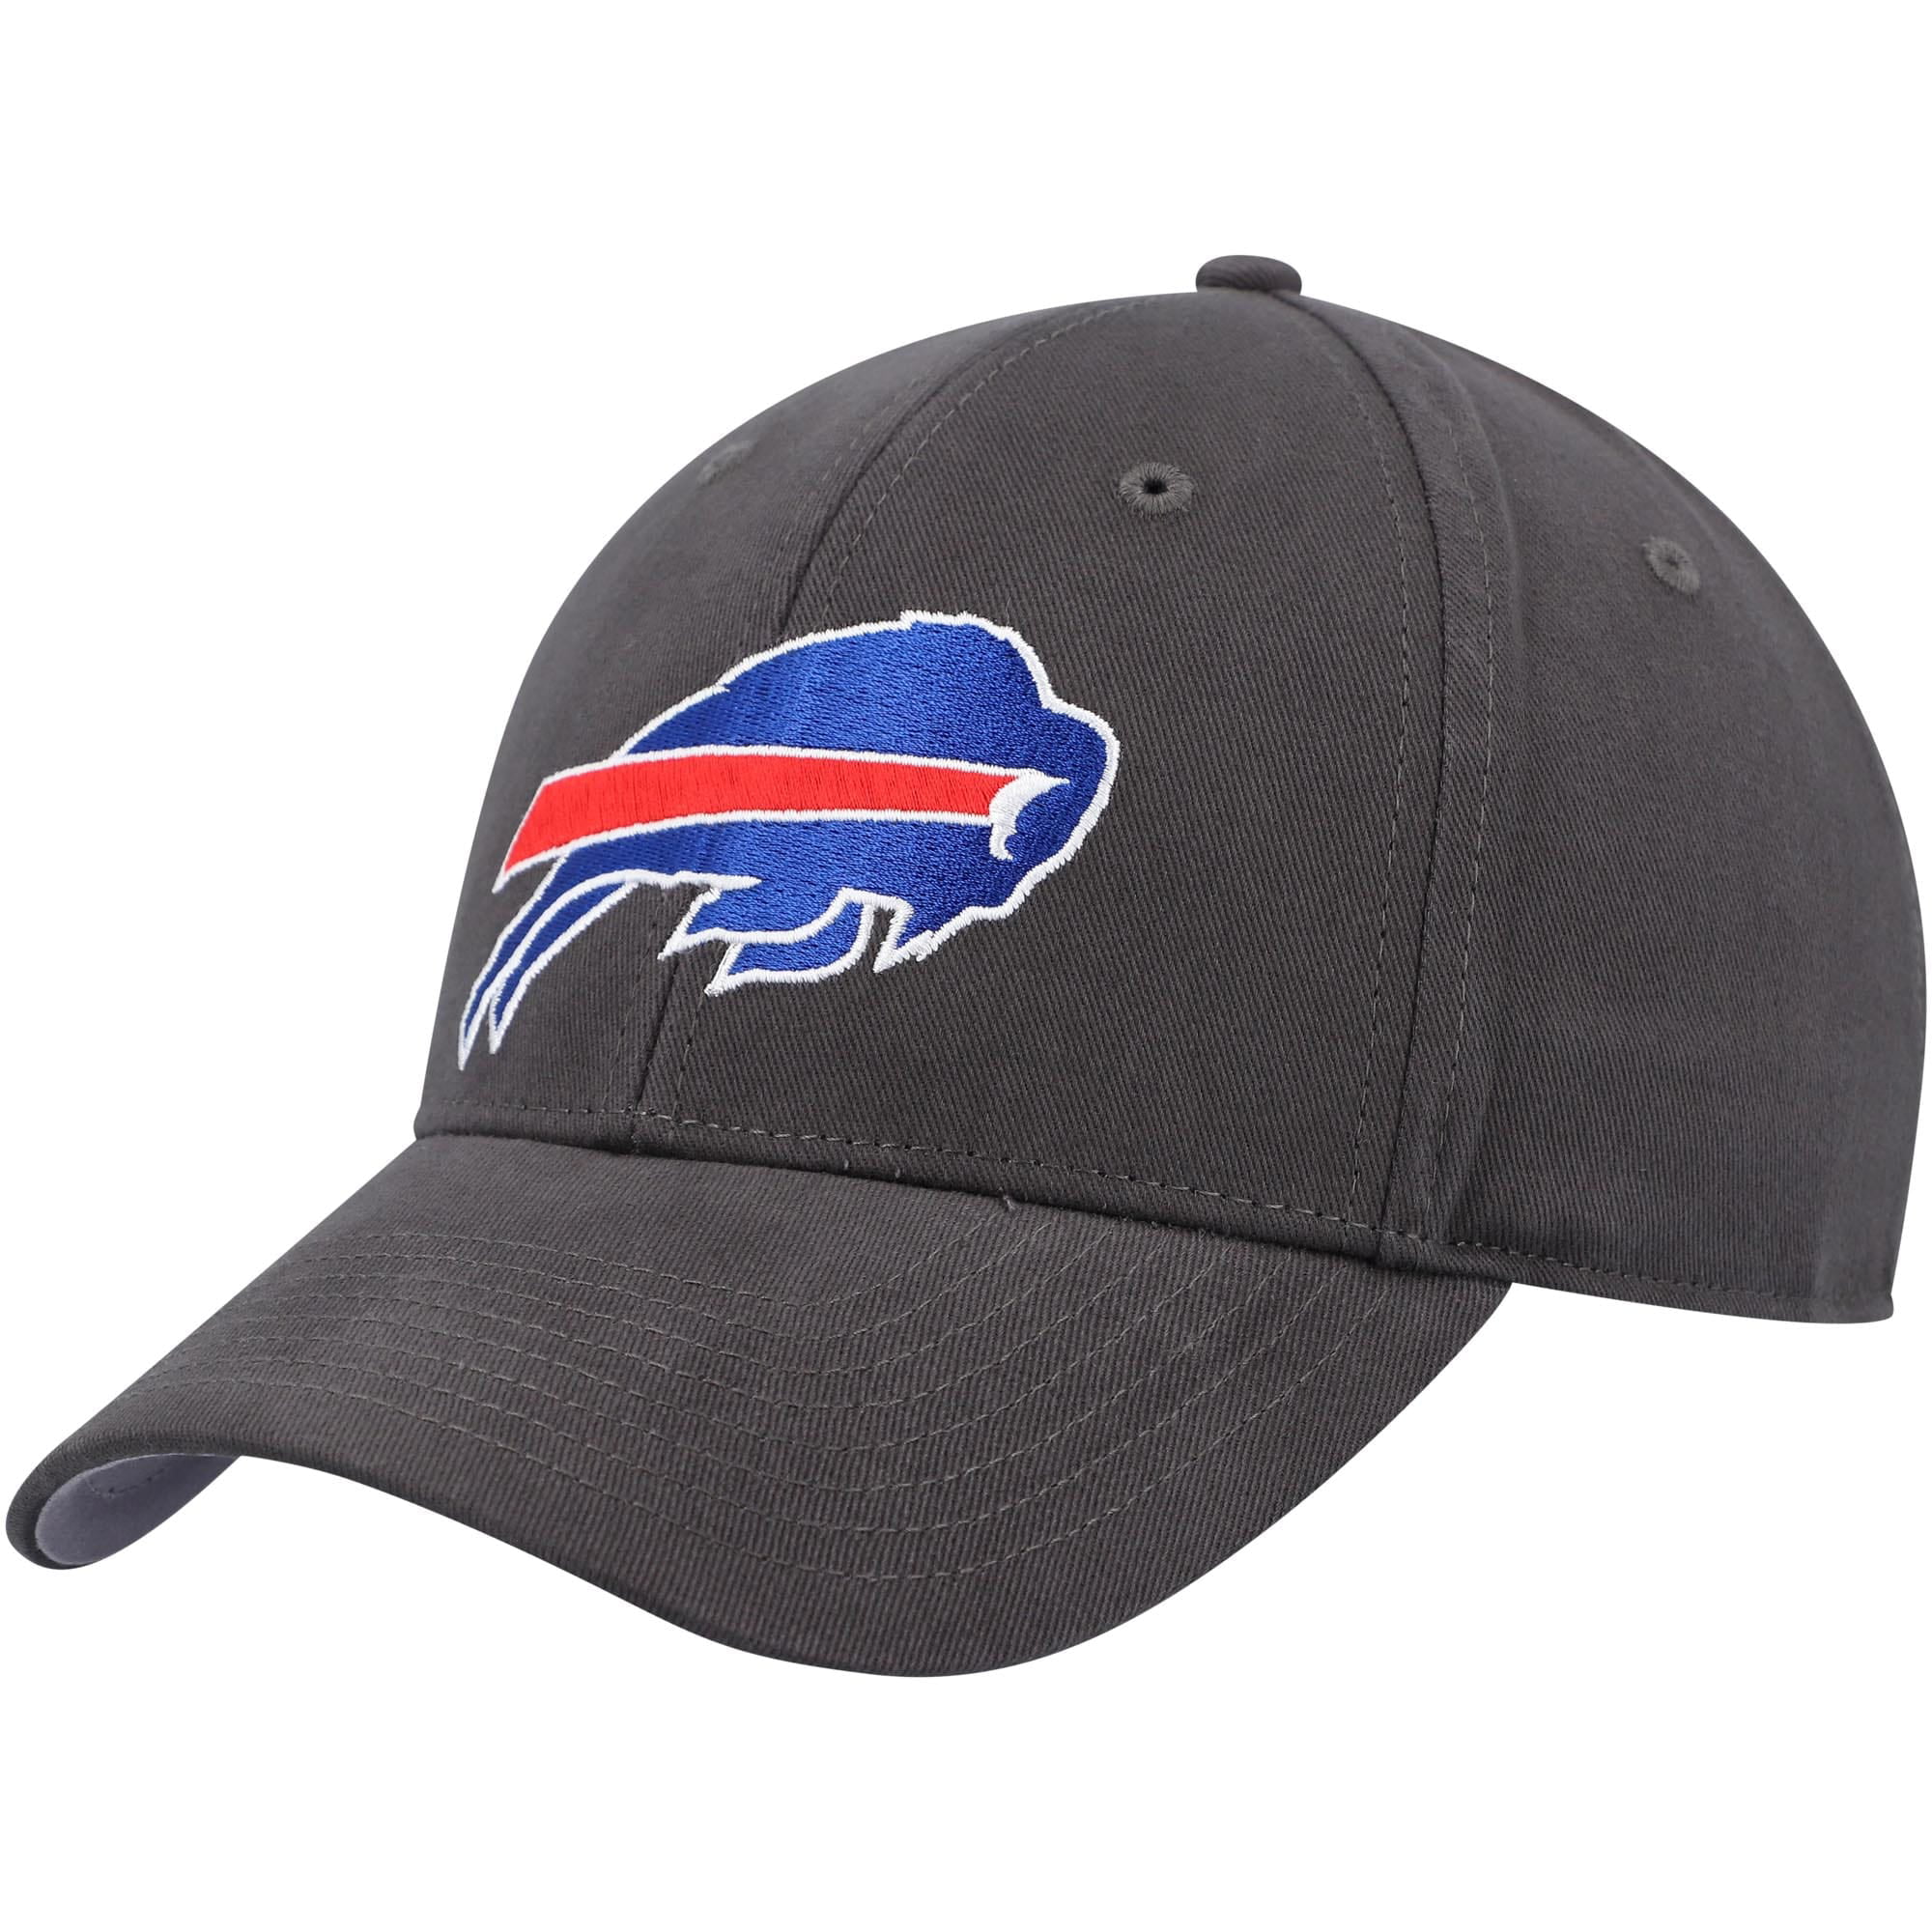 Men's Charcoal Buffalo Bills Adjustable Hat OSFA -